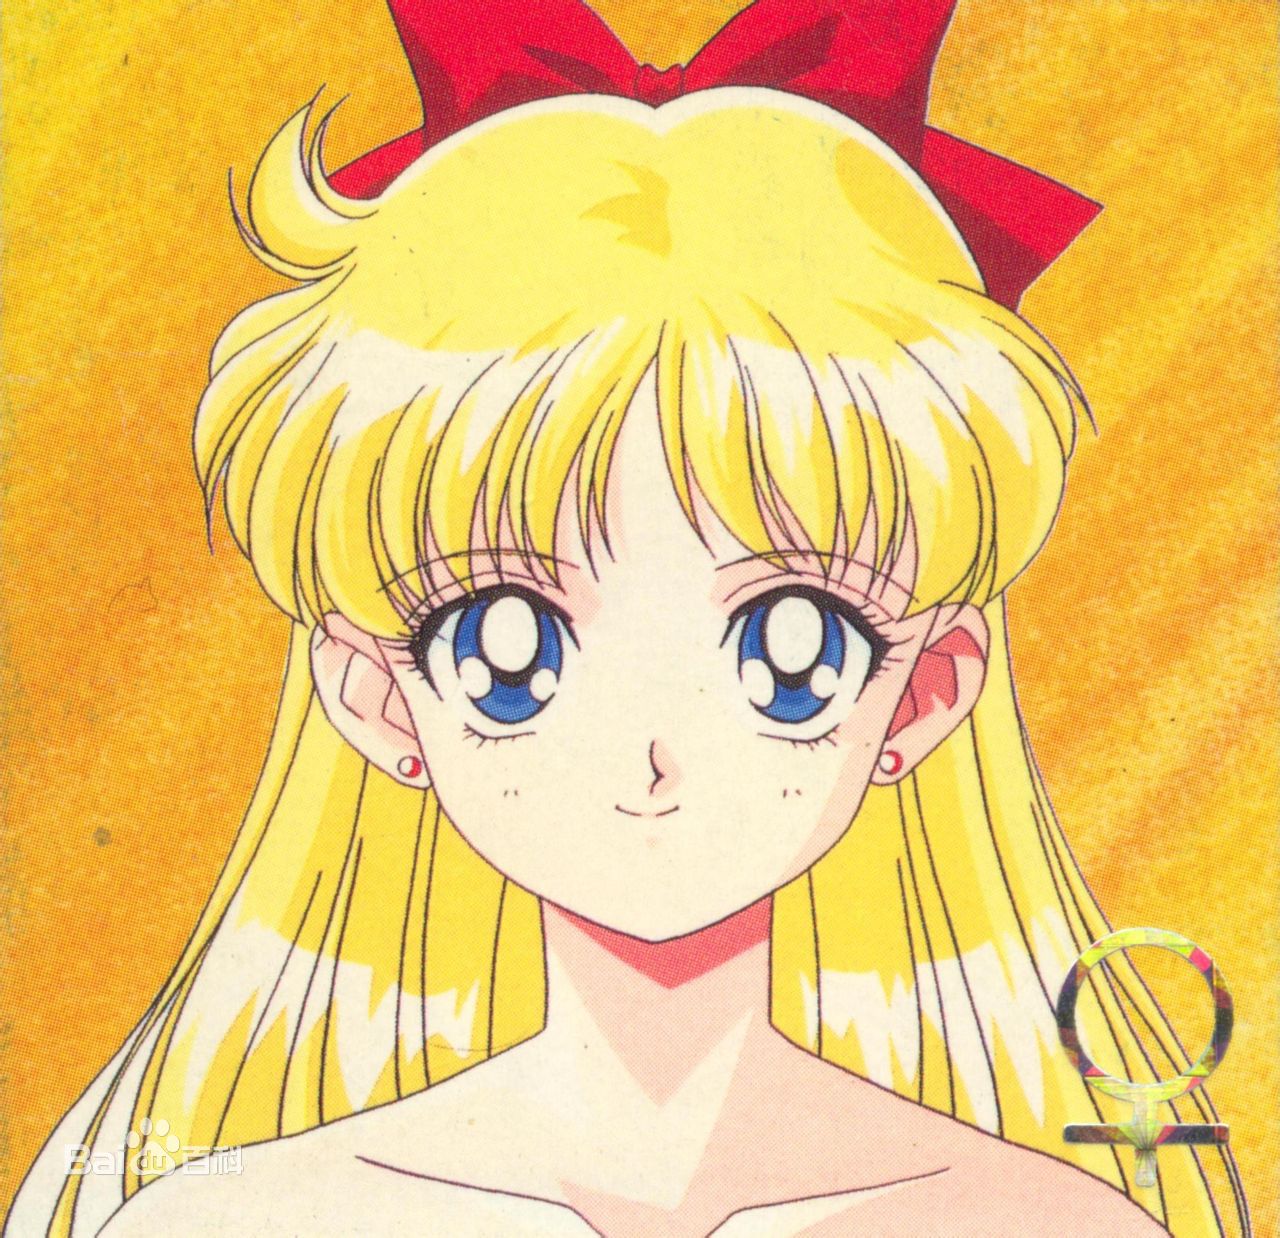 旧漫头像《美少女战士Sailor Stars》爱野美奈子 朝梦想勇往直